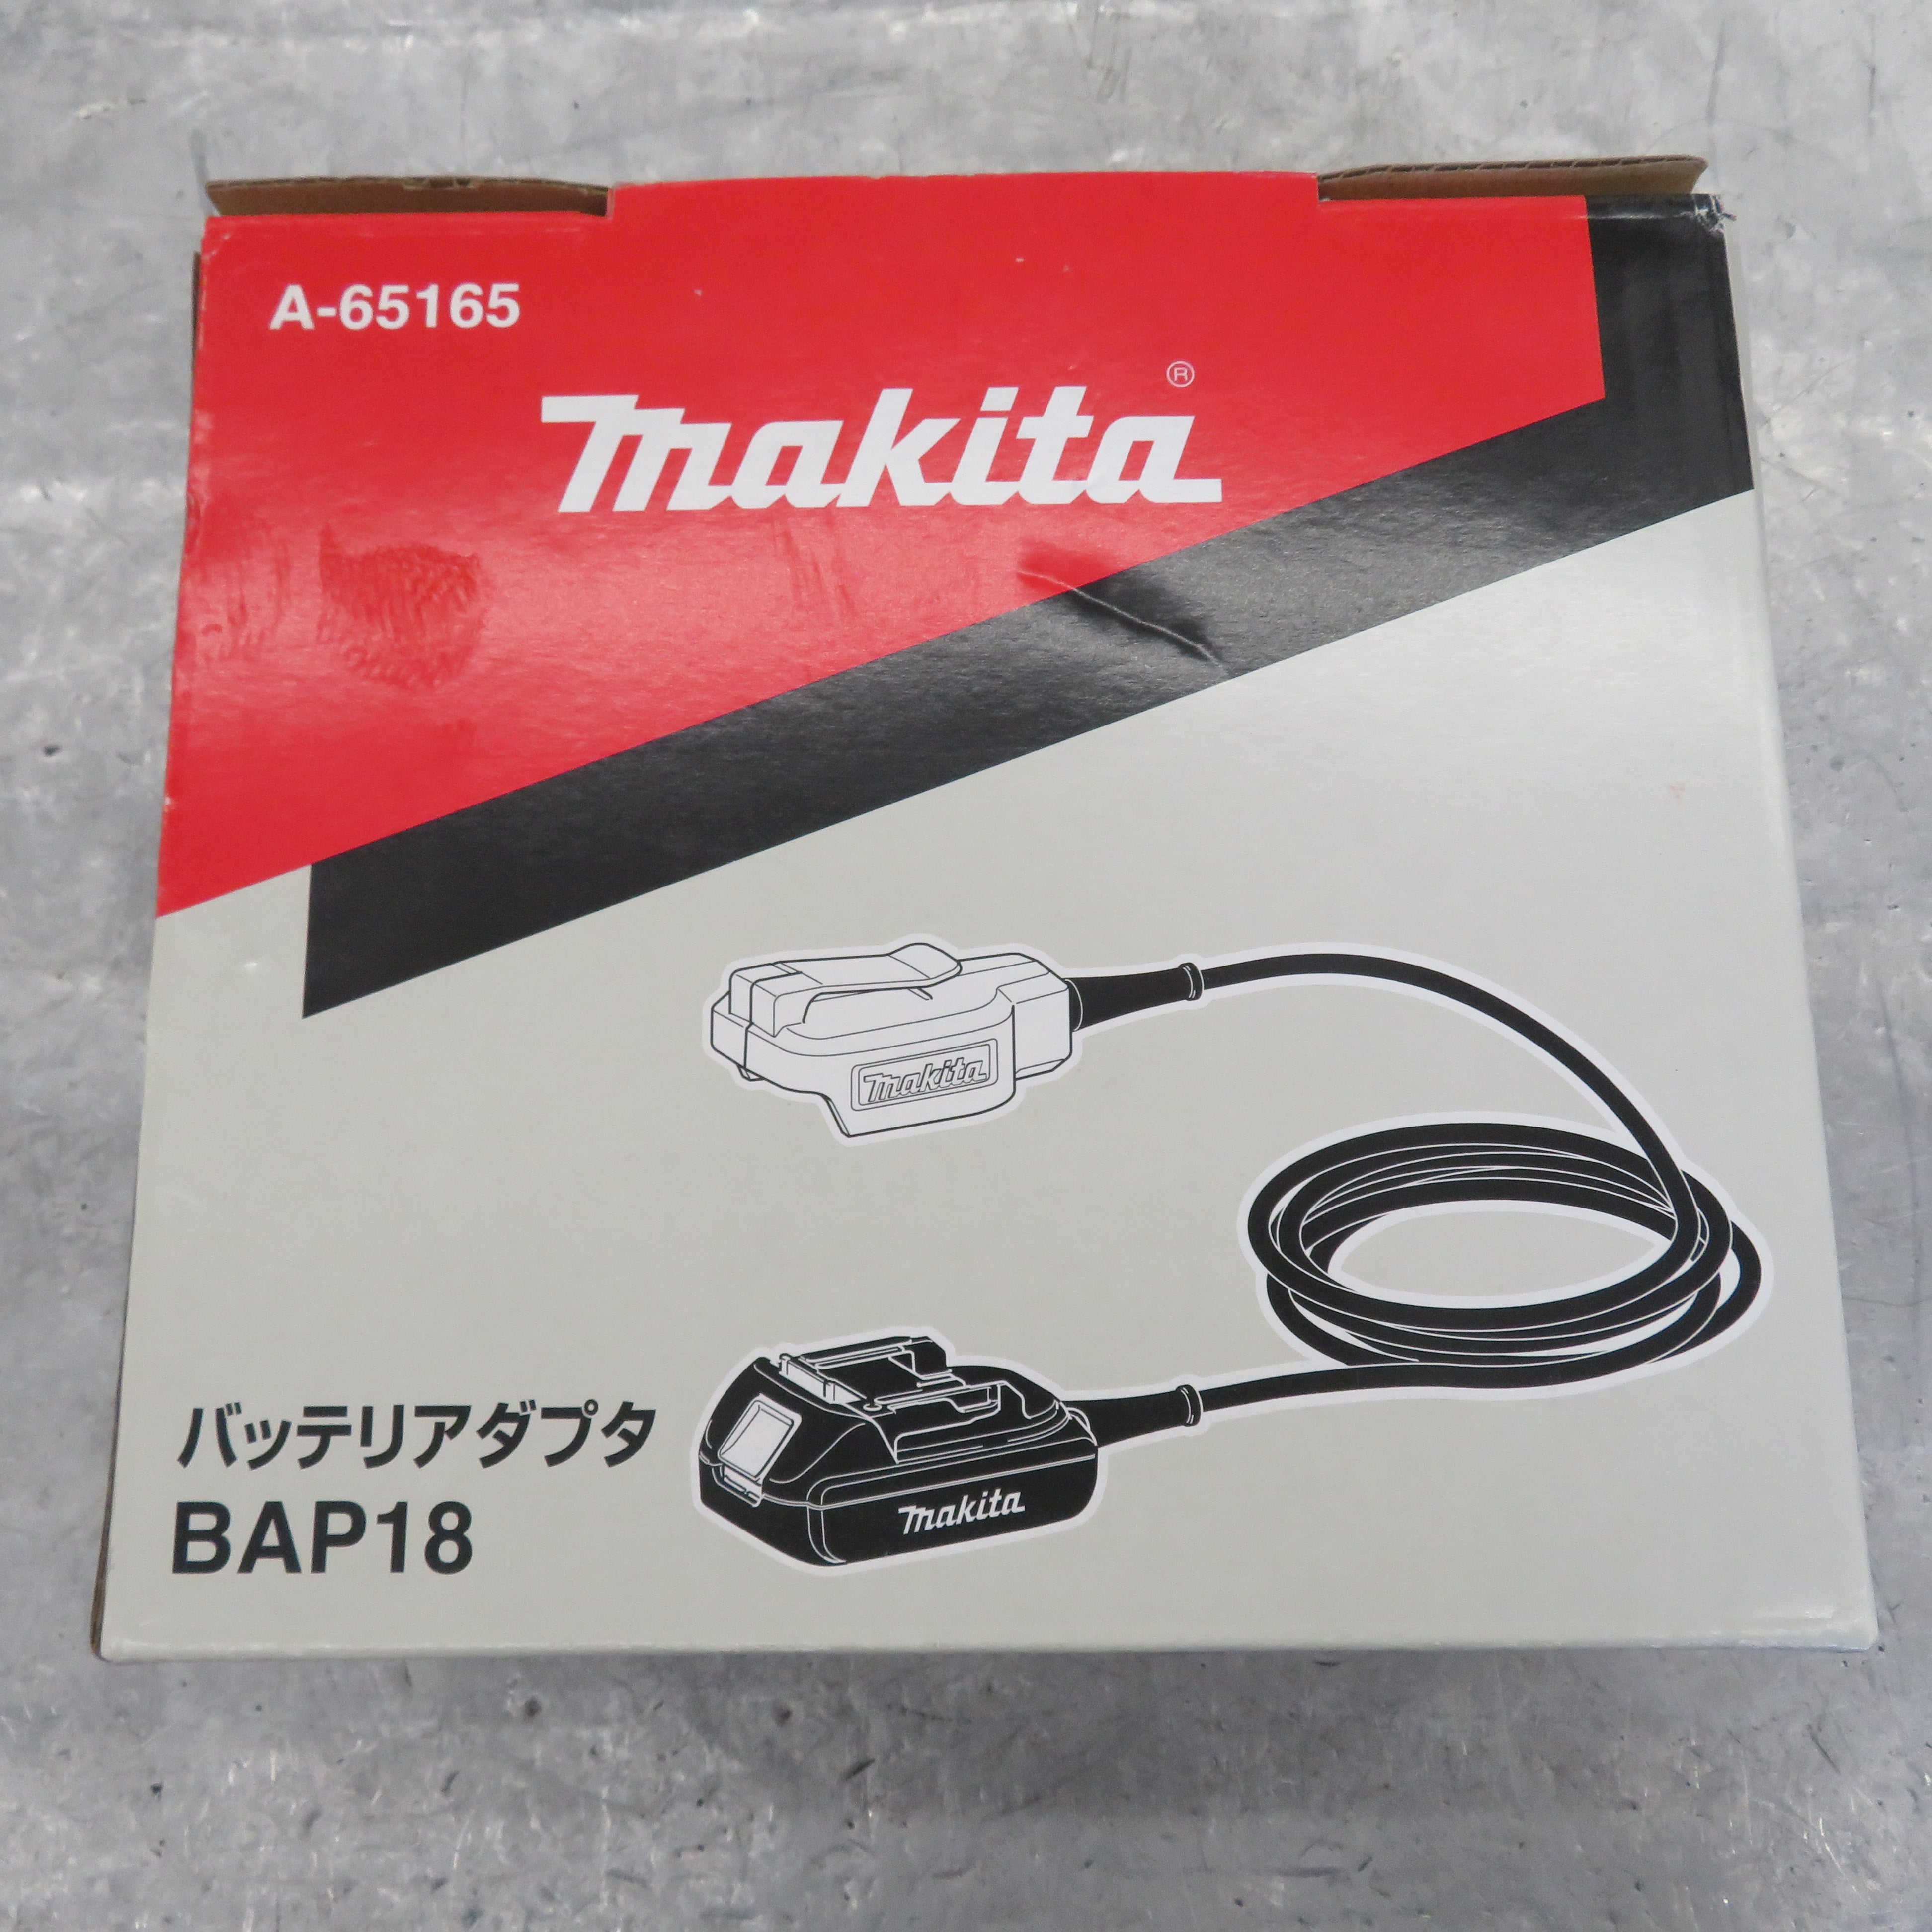 マキタ(makita) バッテリアダプタBAP18 A-65165【所沢店】